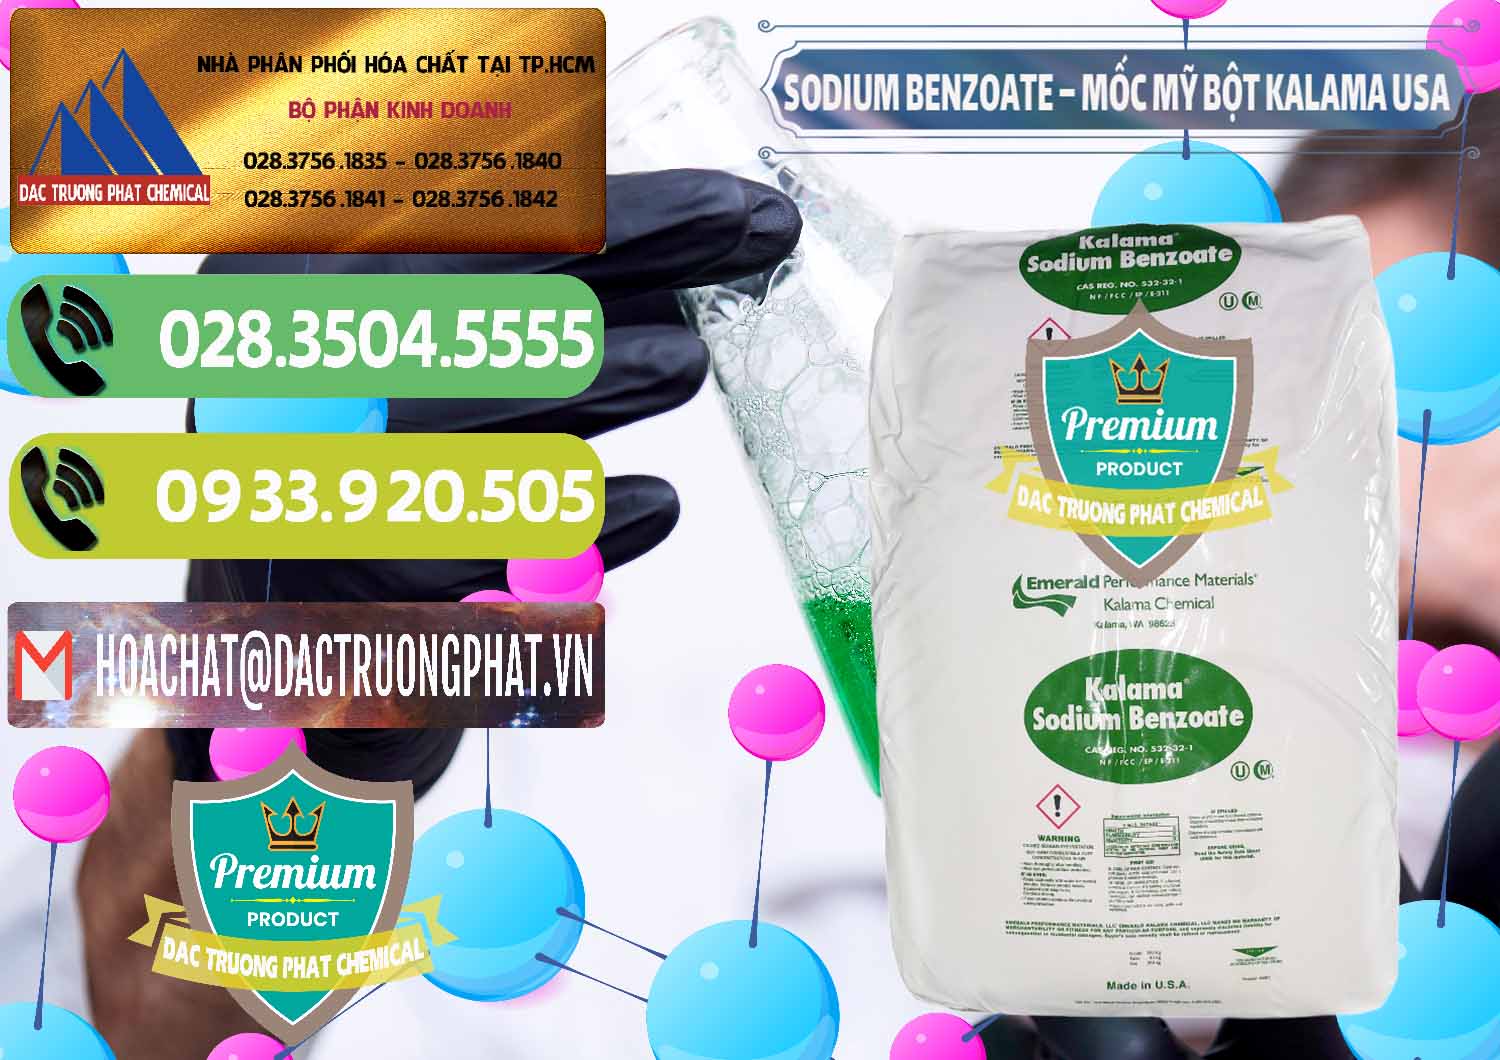 Công ty chuyên bán _ cung cấp Sodium Benzoate - Mốc Bột Kalama Food Grade Mỹ Usa - 0136 - Phân phối & kinh doanh hóa chất tại TP.HCM - hoachatmientay.vn